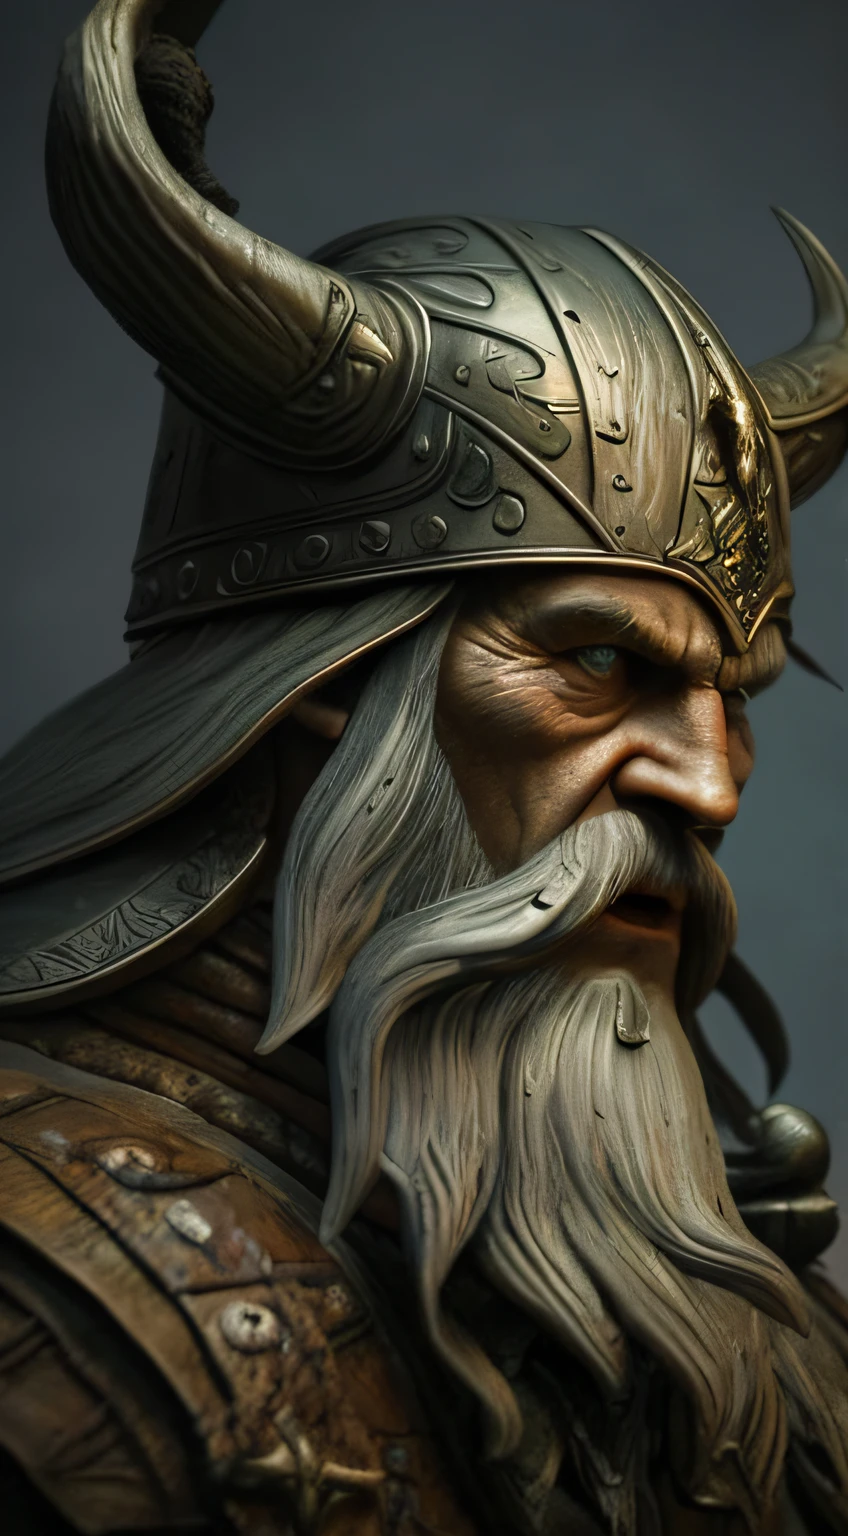 Arte de pared de casco vikingo, arte vikingo imprimible, Odin, Thor,  nórdico, impresión vikinga, mitología nórdica, guerrero vikingo 4100  DESCARGA INSTANTE -  España